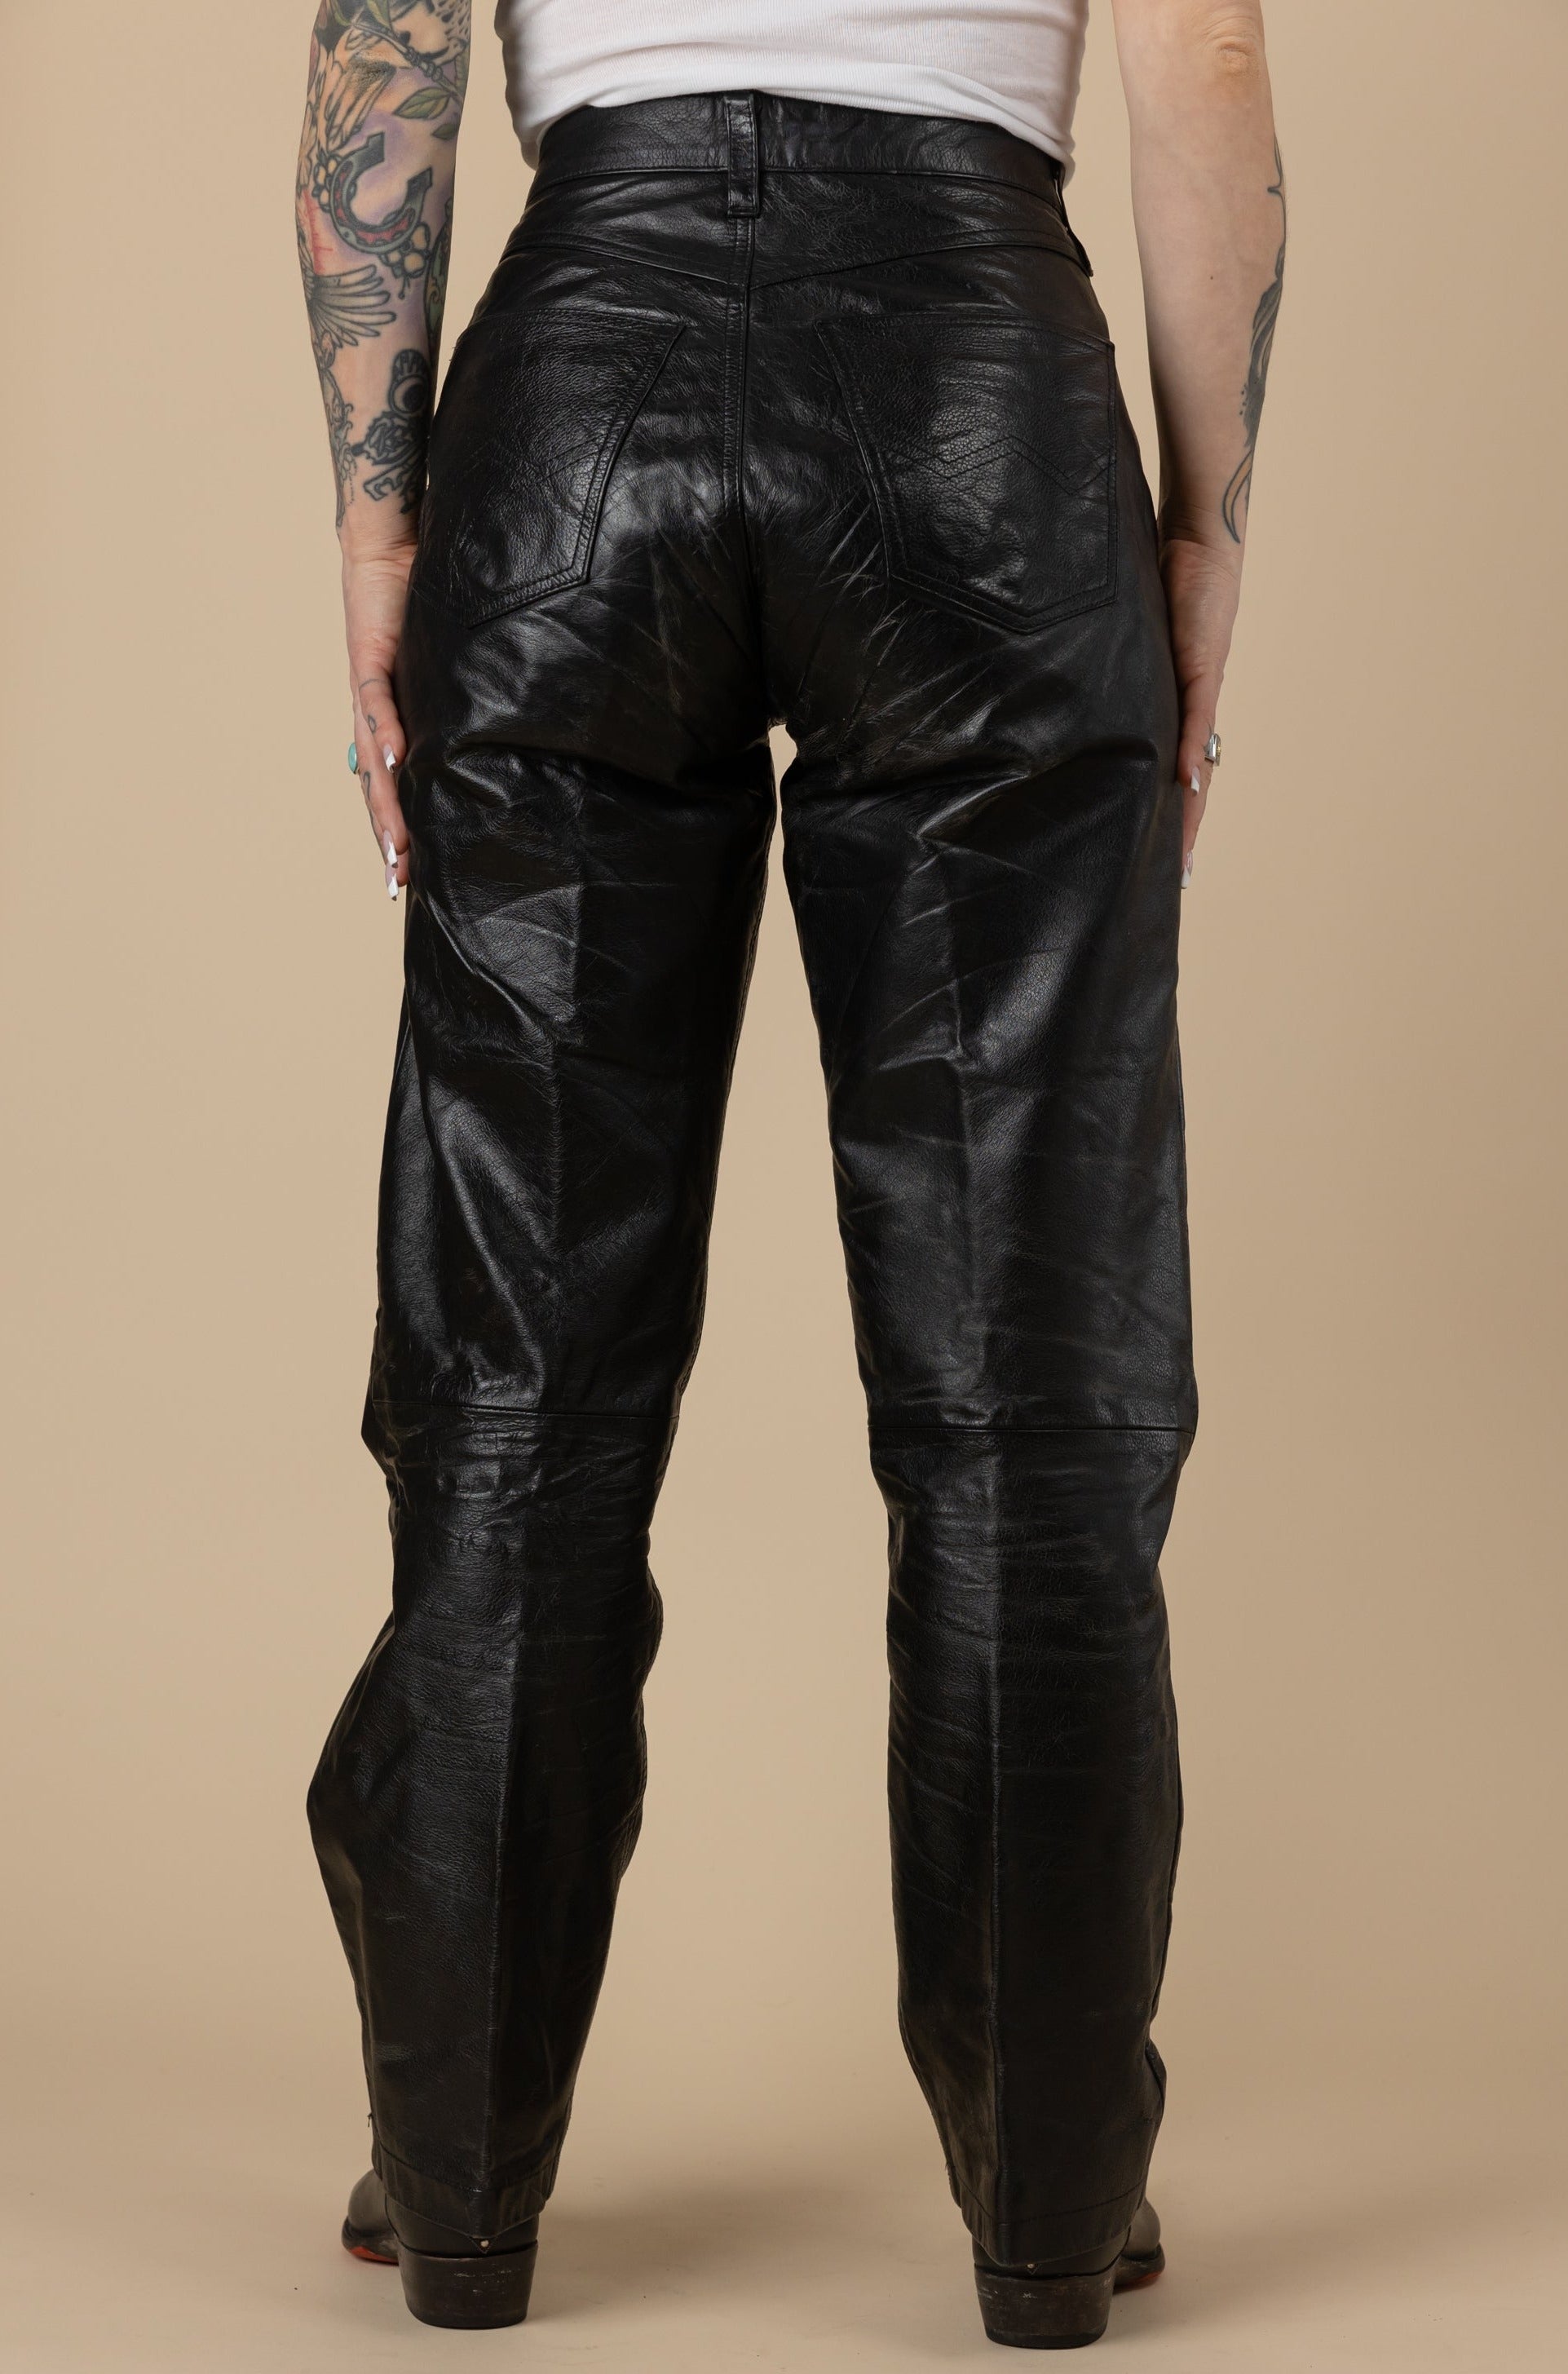 Vintage Leather Harley Davidson Flame Black Size 4 Pants Genuine